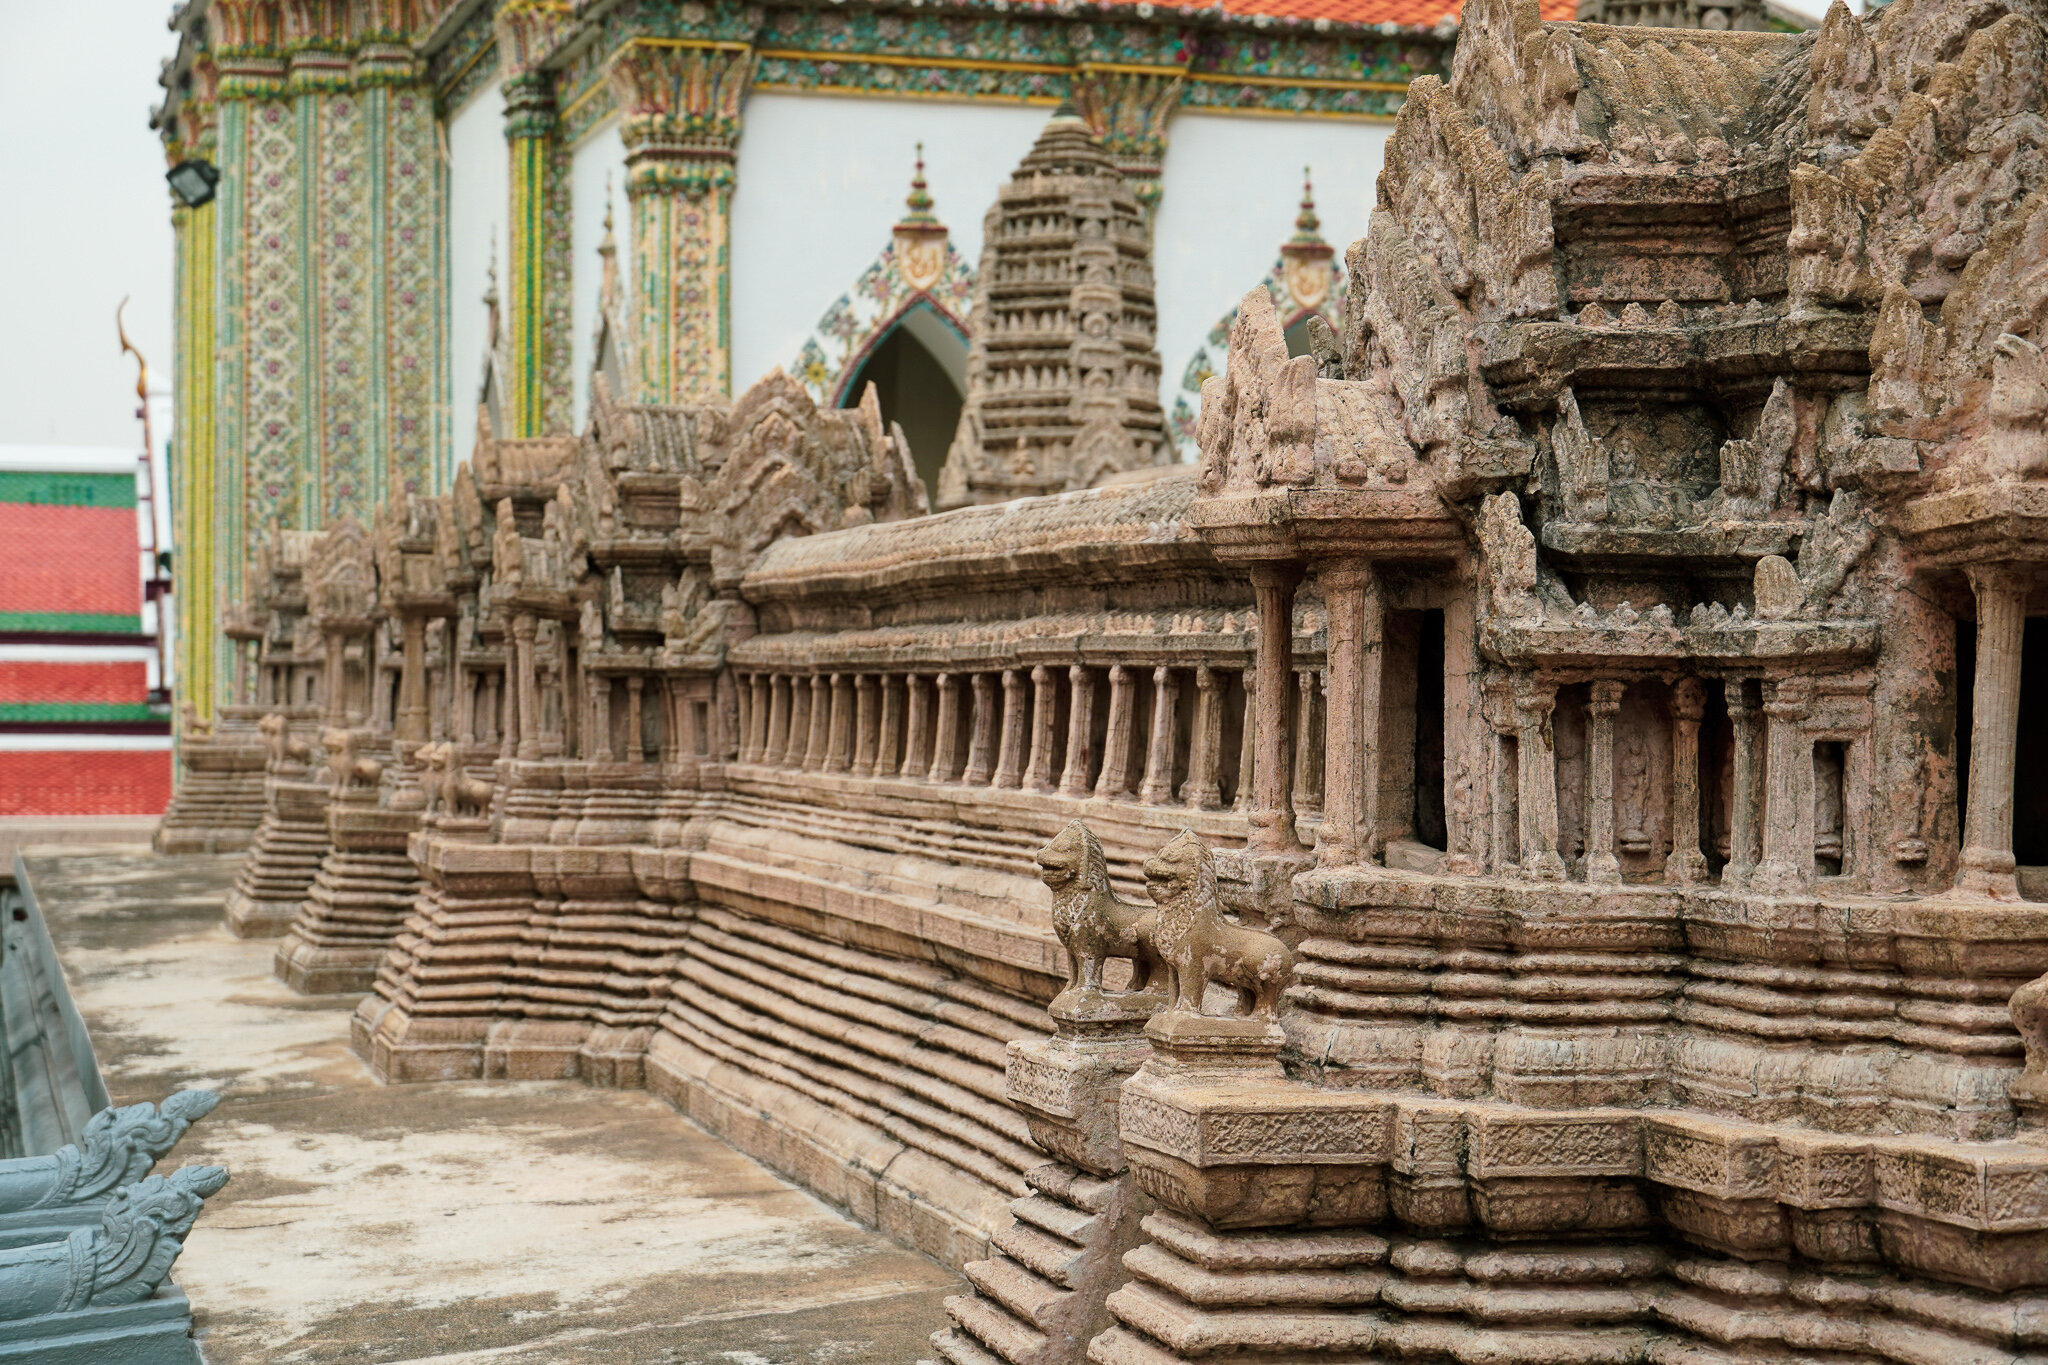 Model of Angkor Wat at the Grand Palace